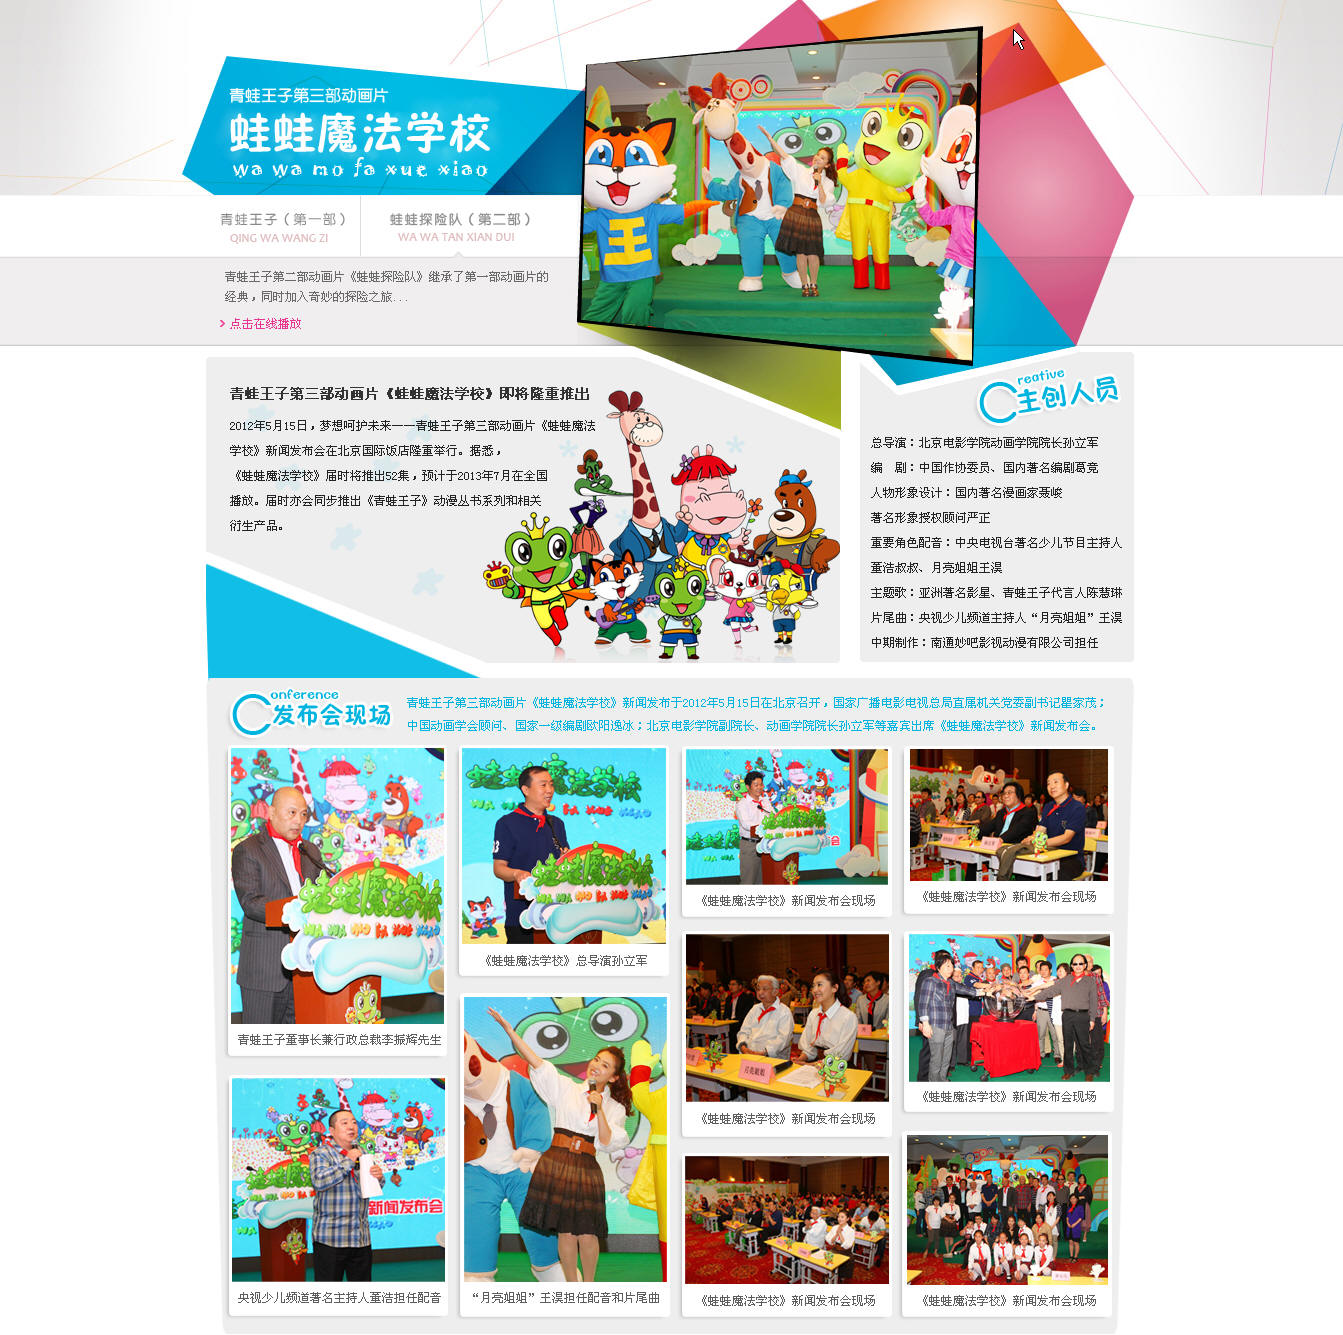 蛙蛙魔法學校專題由中國兒童護理網製作